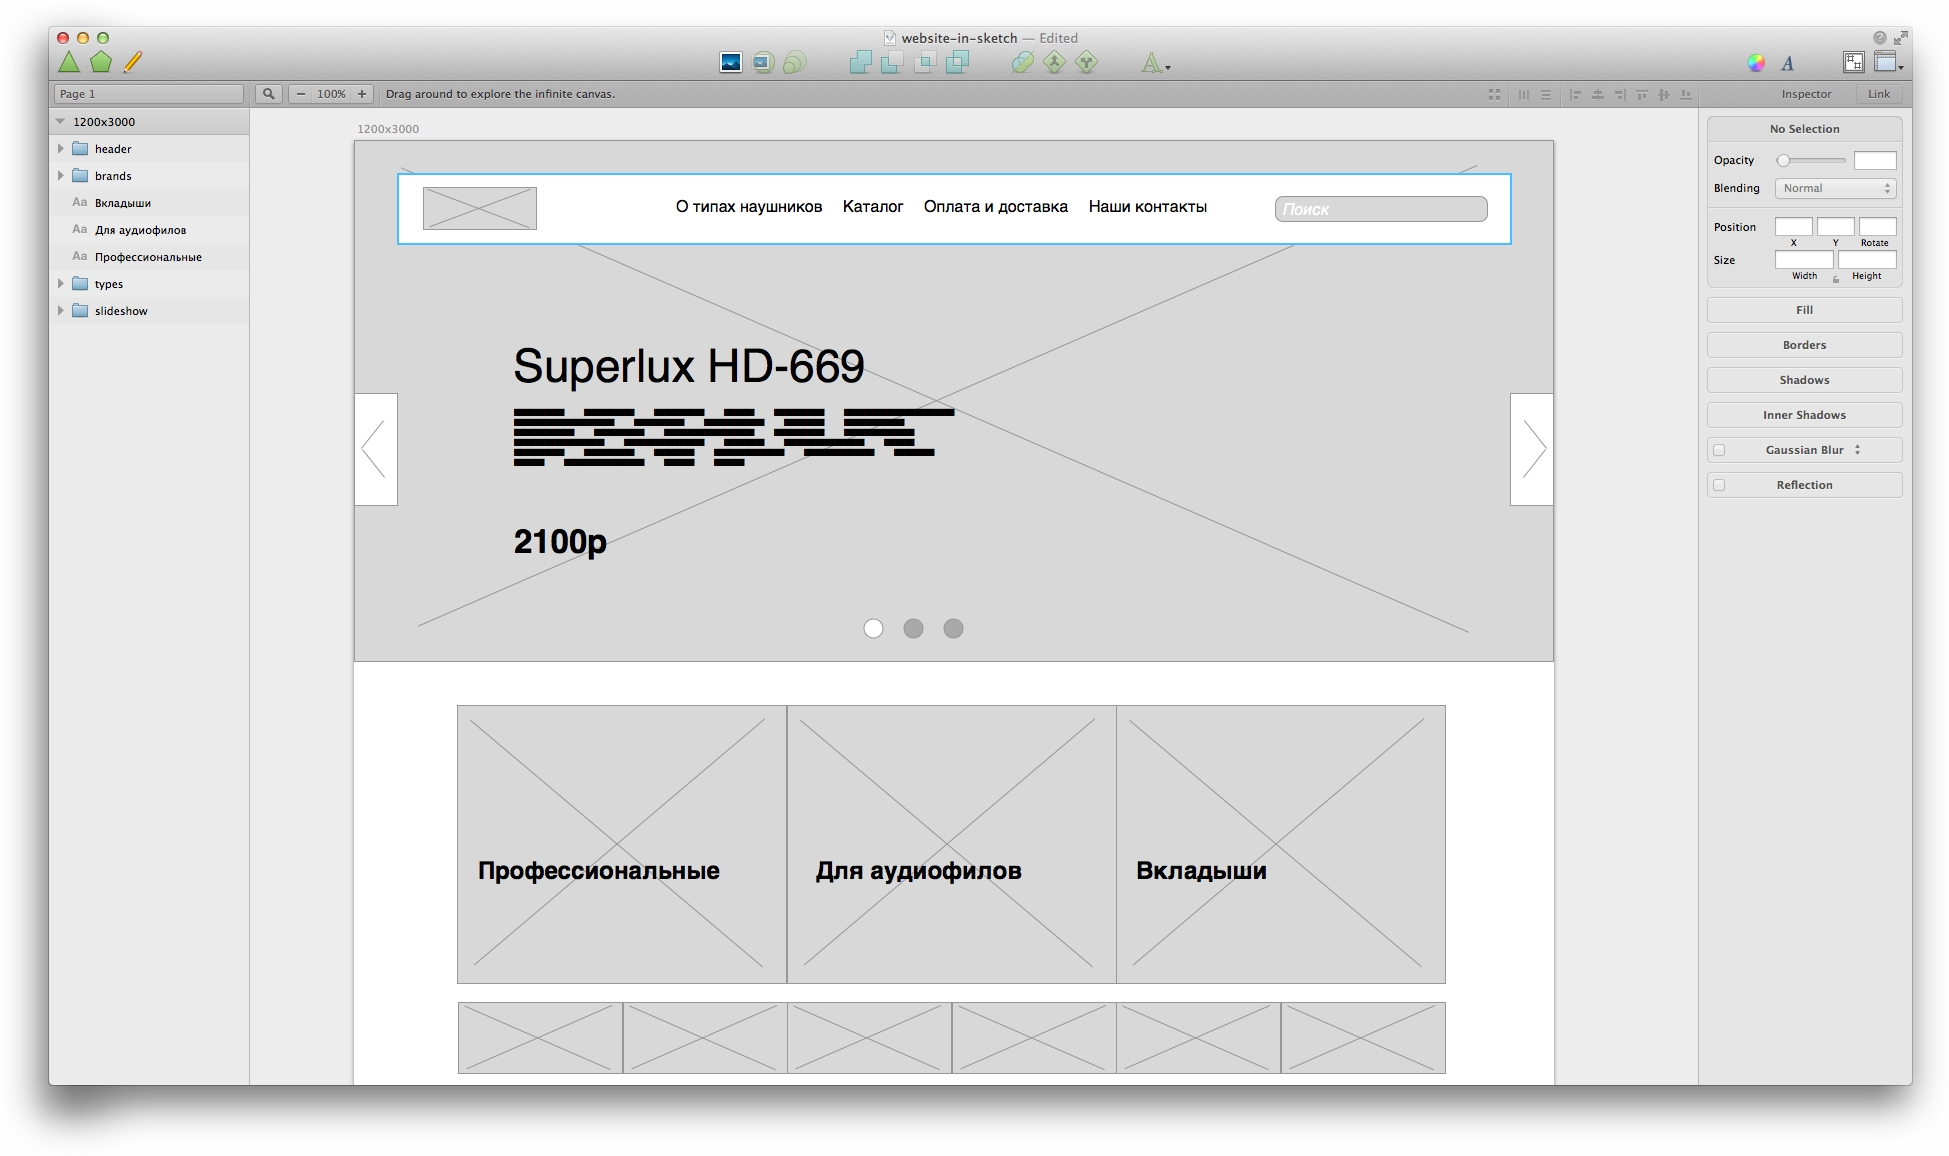 Дизайн сайта в Sketch.app. Часть 1: плагины и прототип